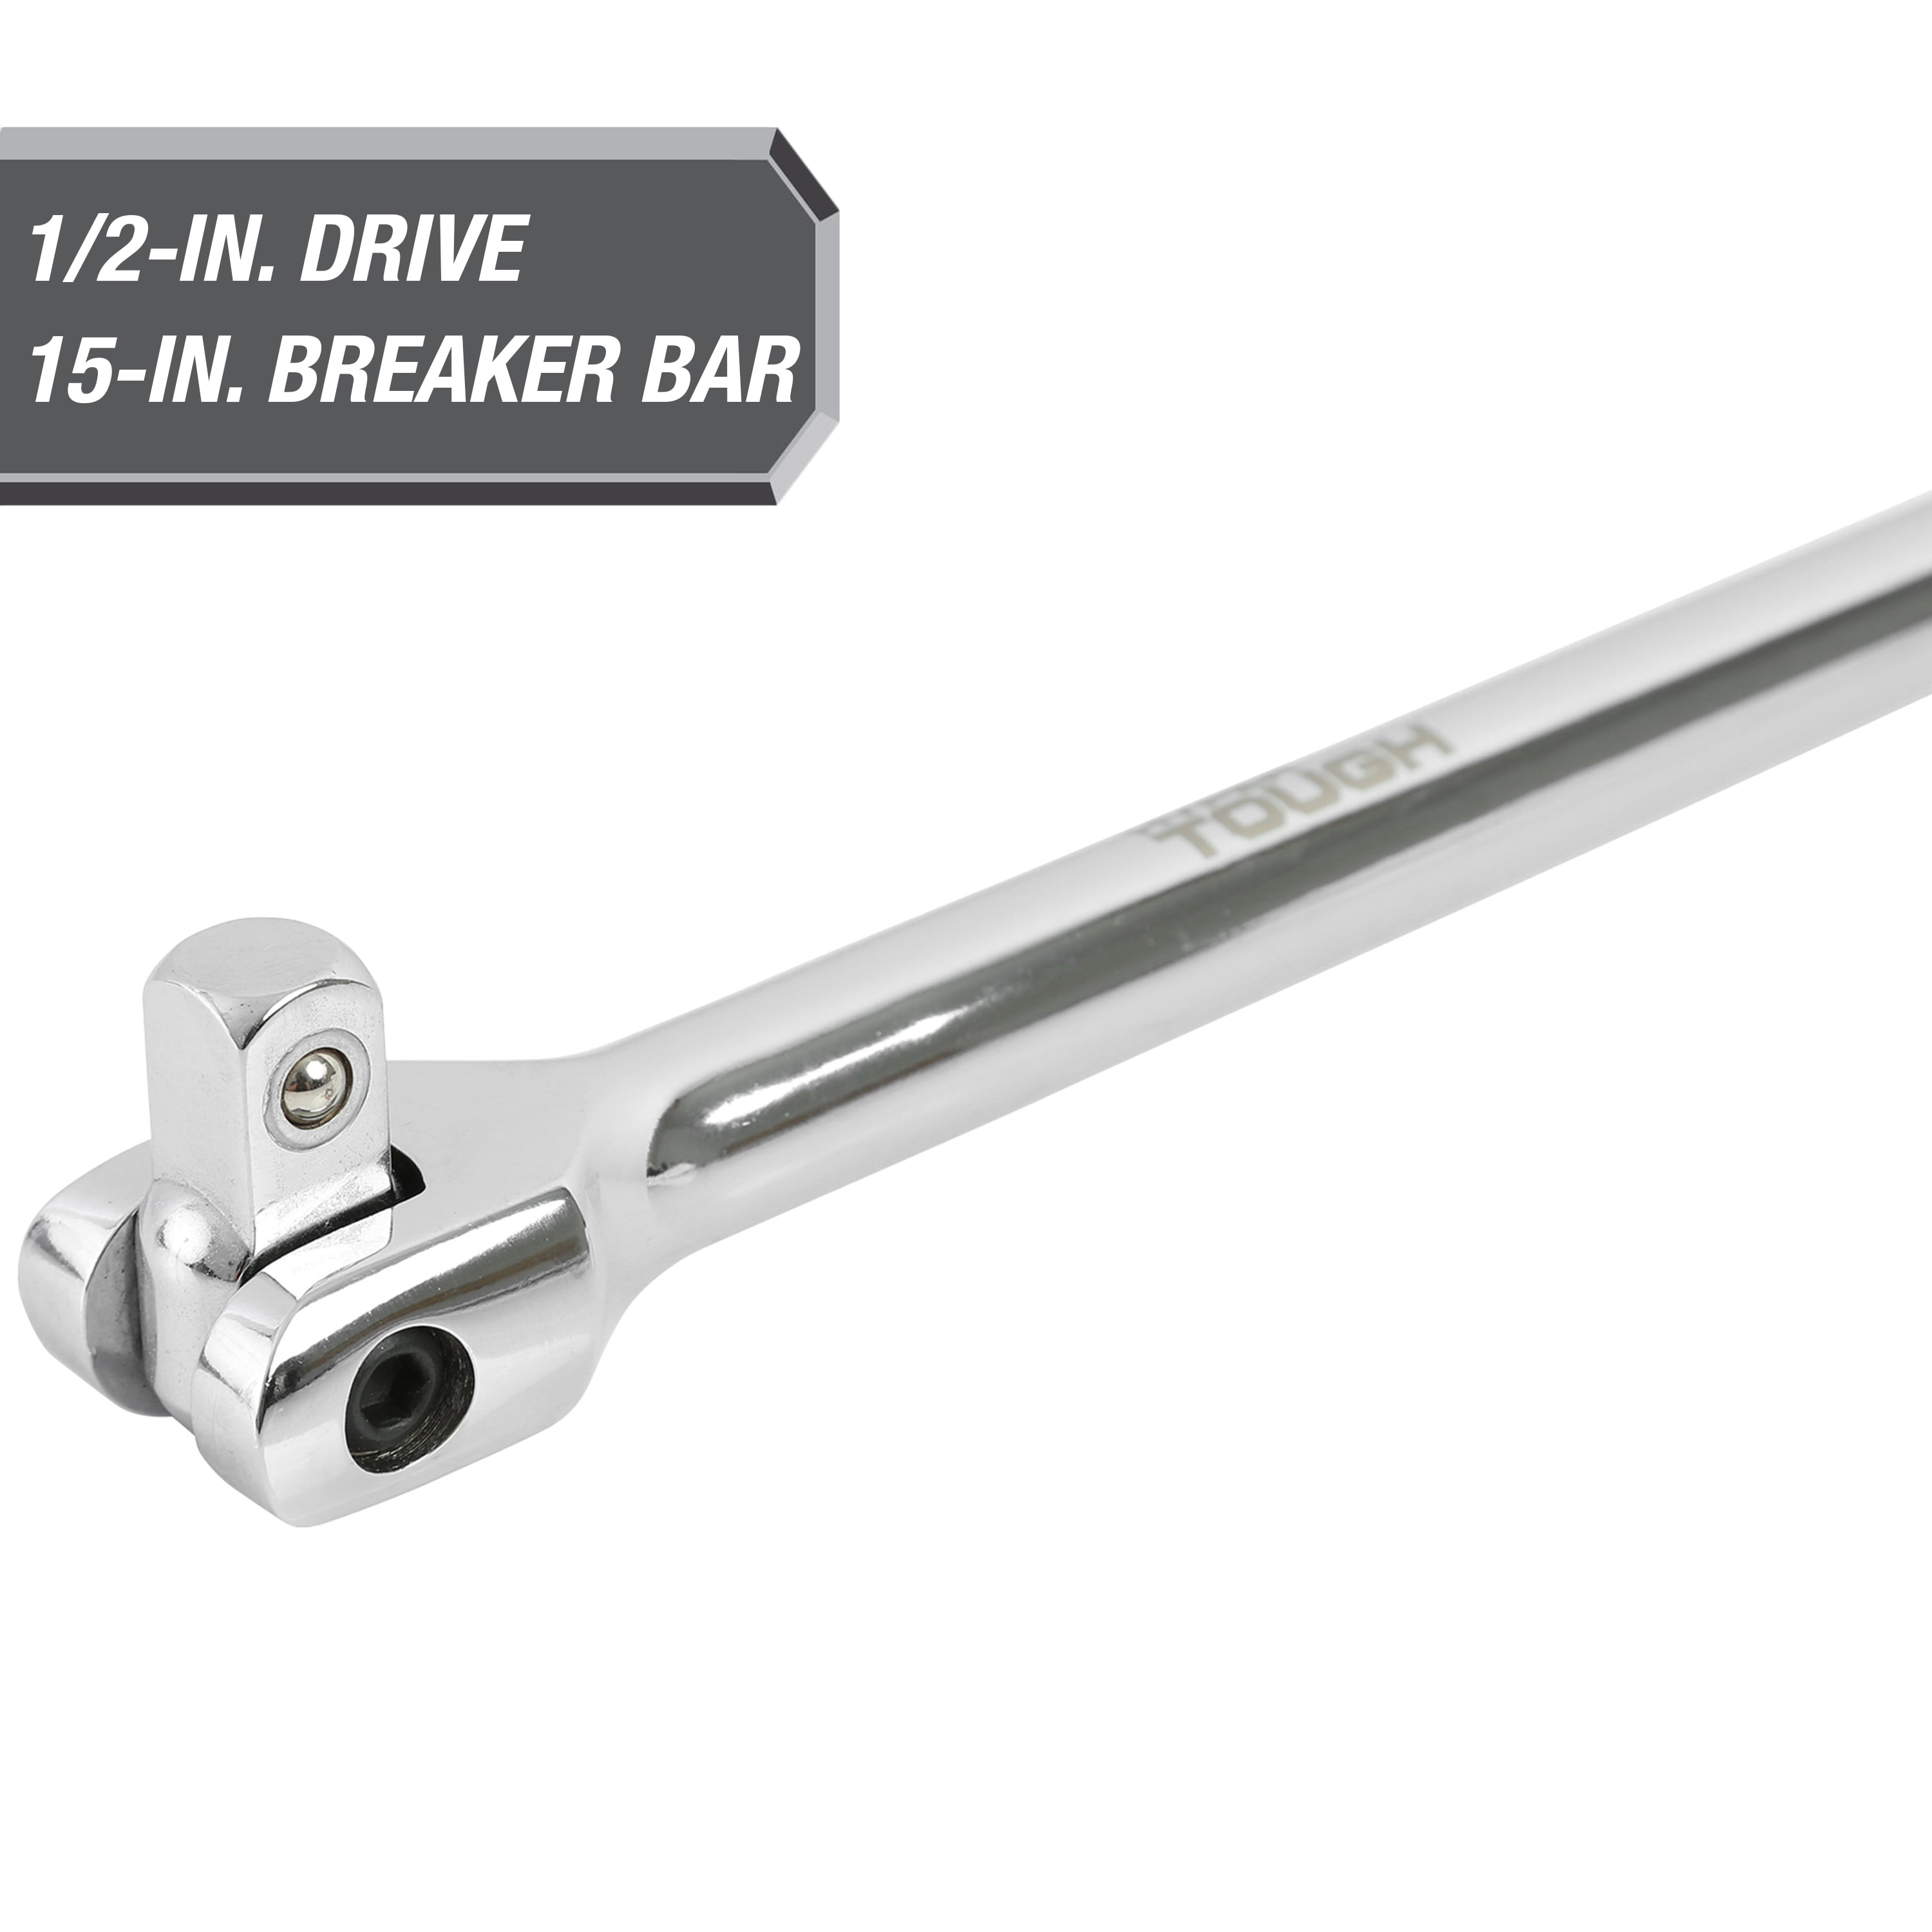 1" Drive Heavy Duty Power Breaker Knuckle Bar Total Length 40" Swivel Head